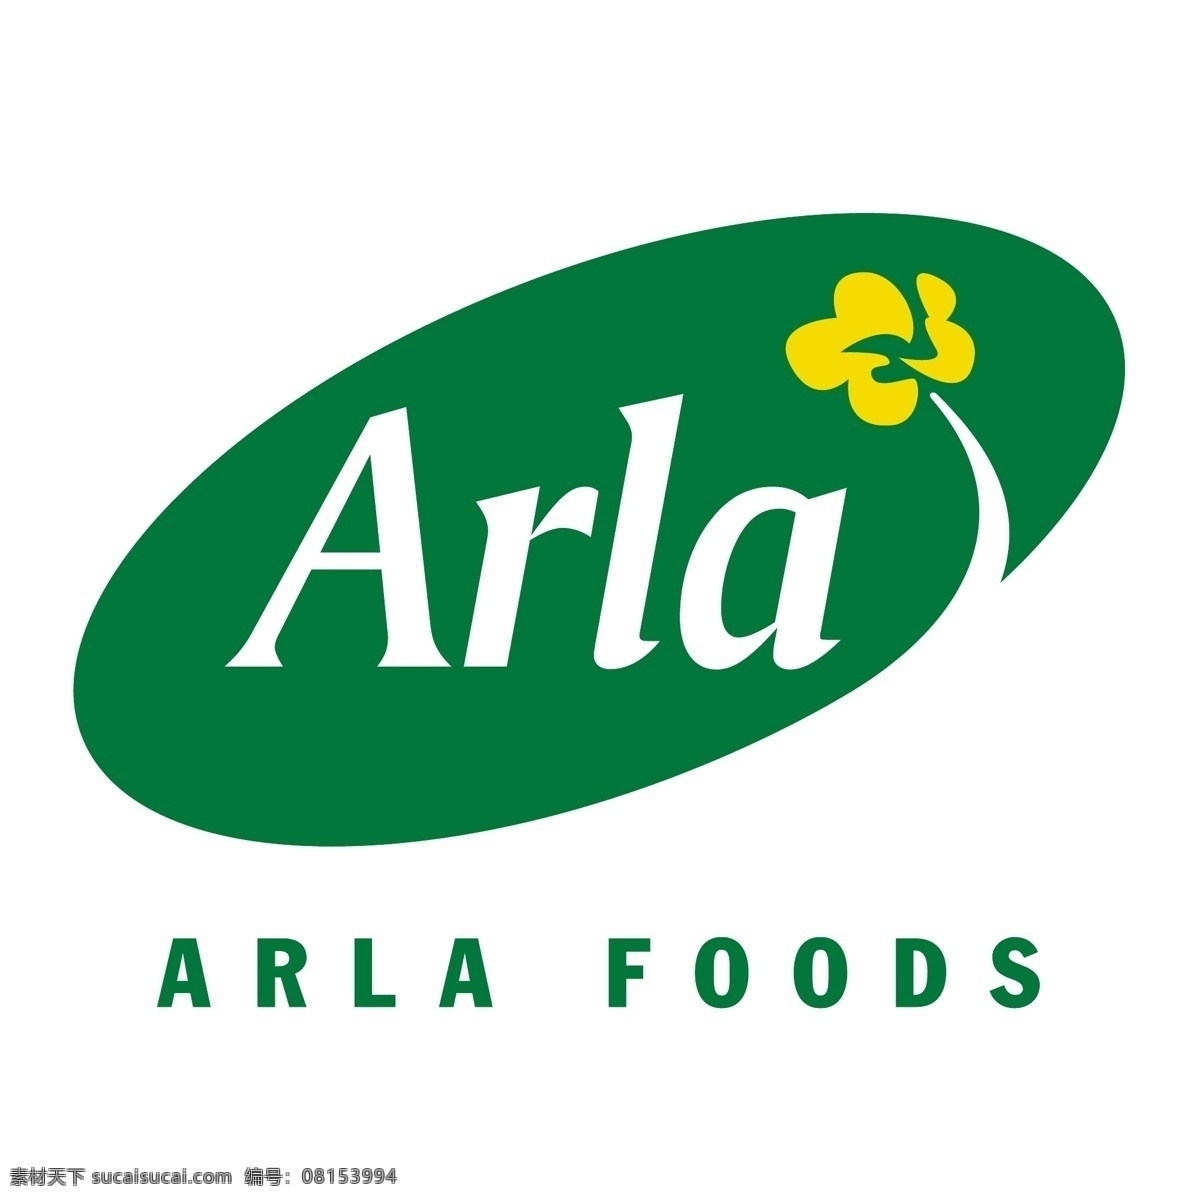 阿尔 拉 公司 免费 arla 食品 英国 标志 psd源文件 logo设计